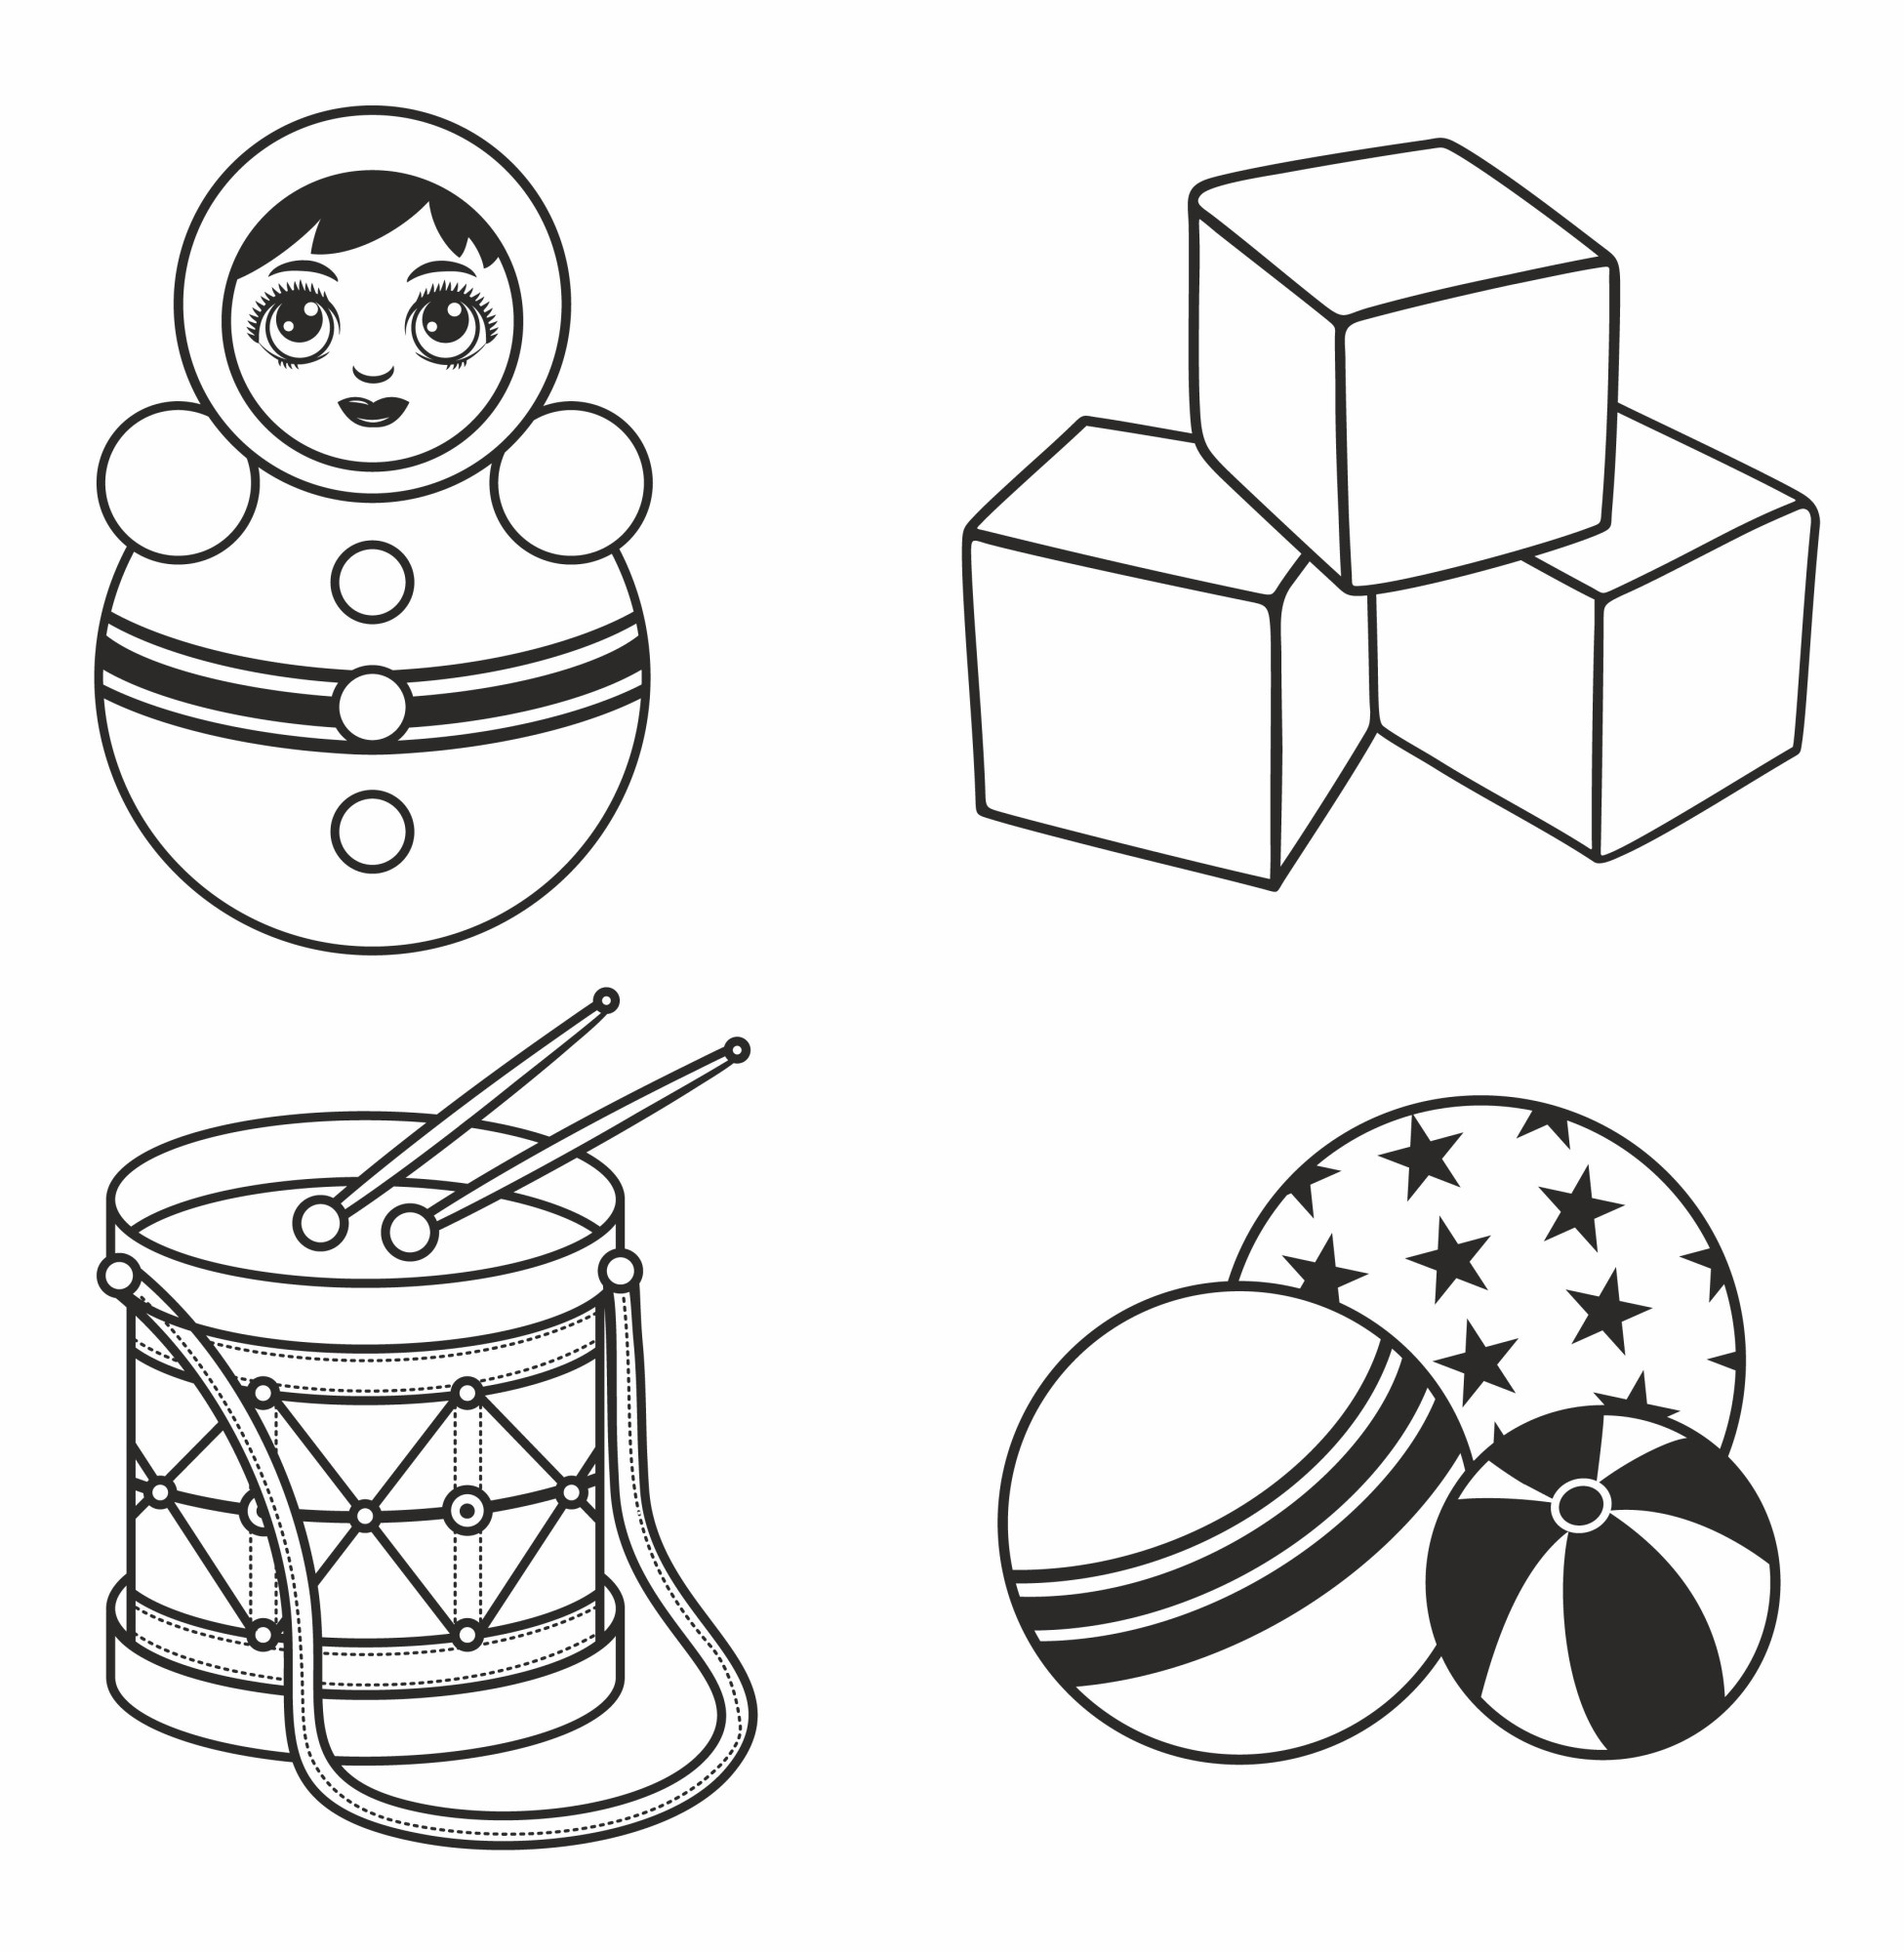 Раскраска для детей: игрушки для детей: кубики, барабан с палочками, неваляшка и мячики